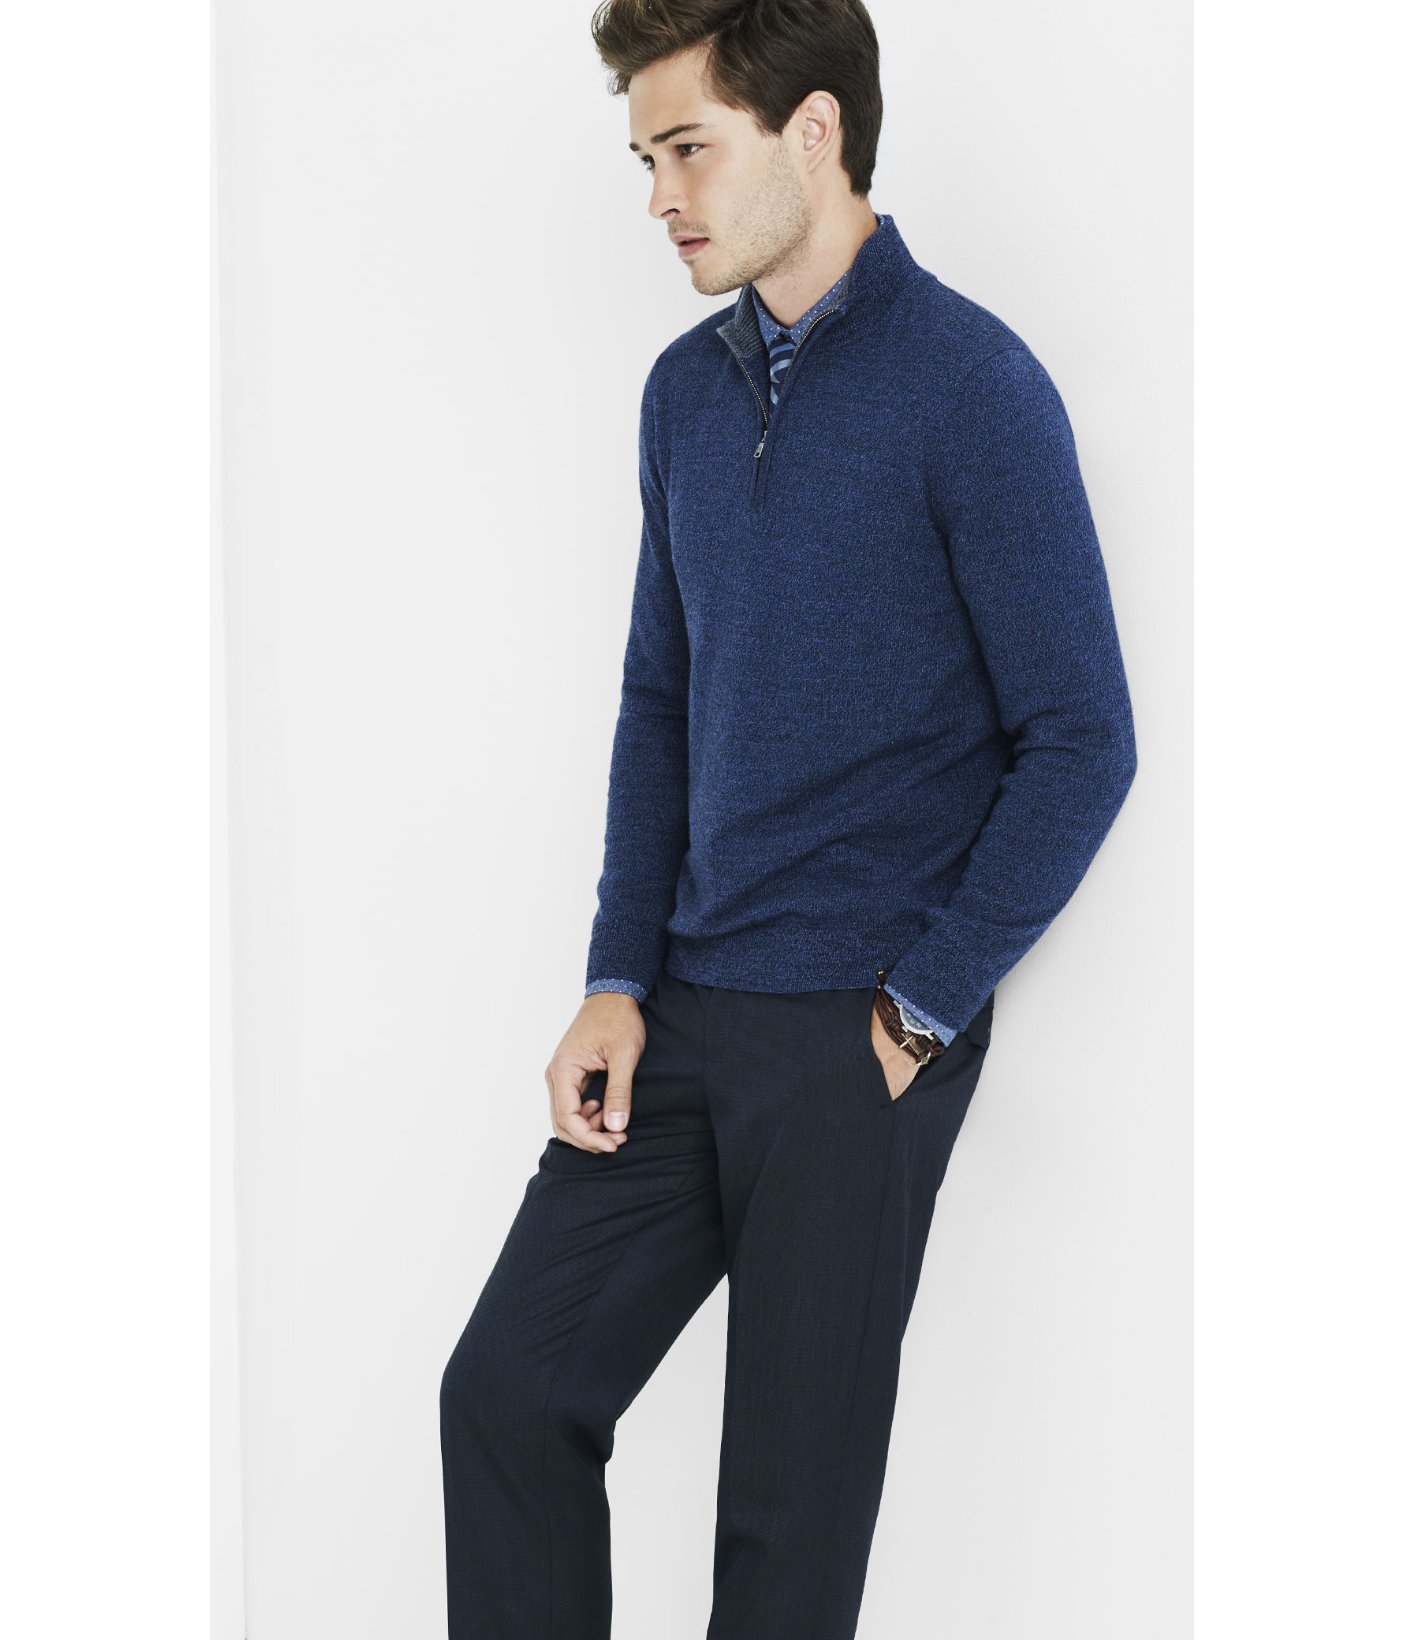 Download Express Merino Wool Zip-up Mock Neck Sweater in Denim ...